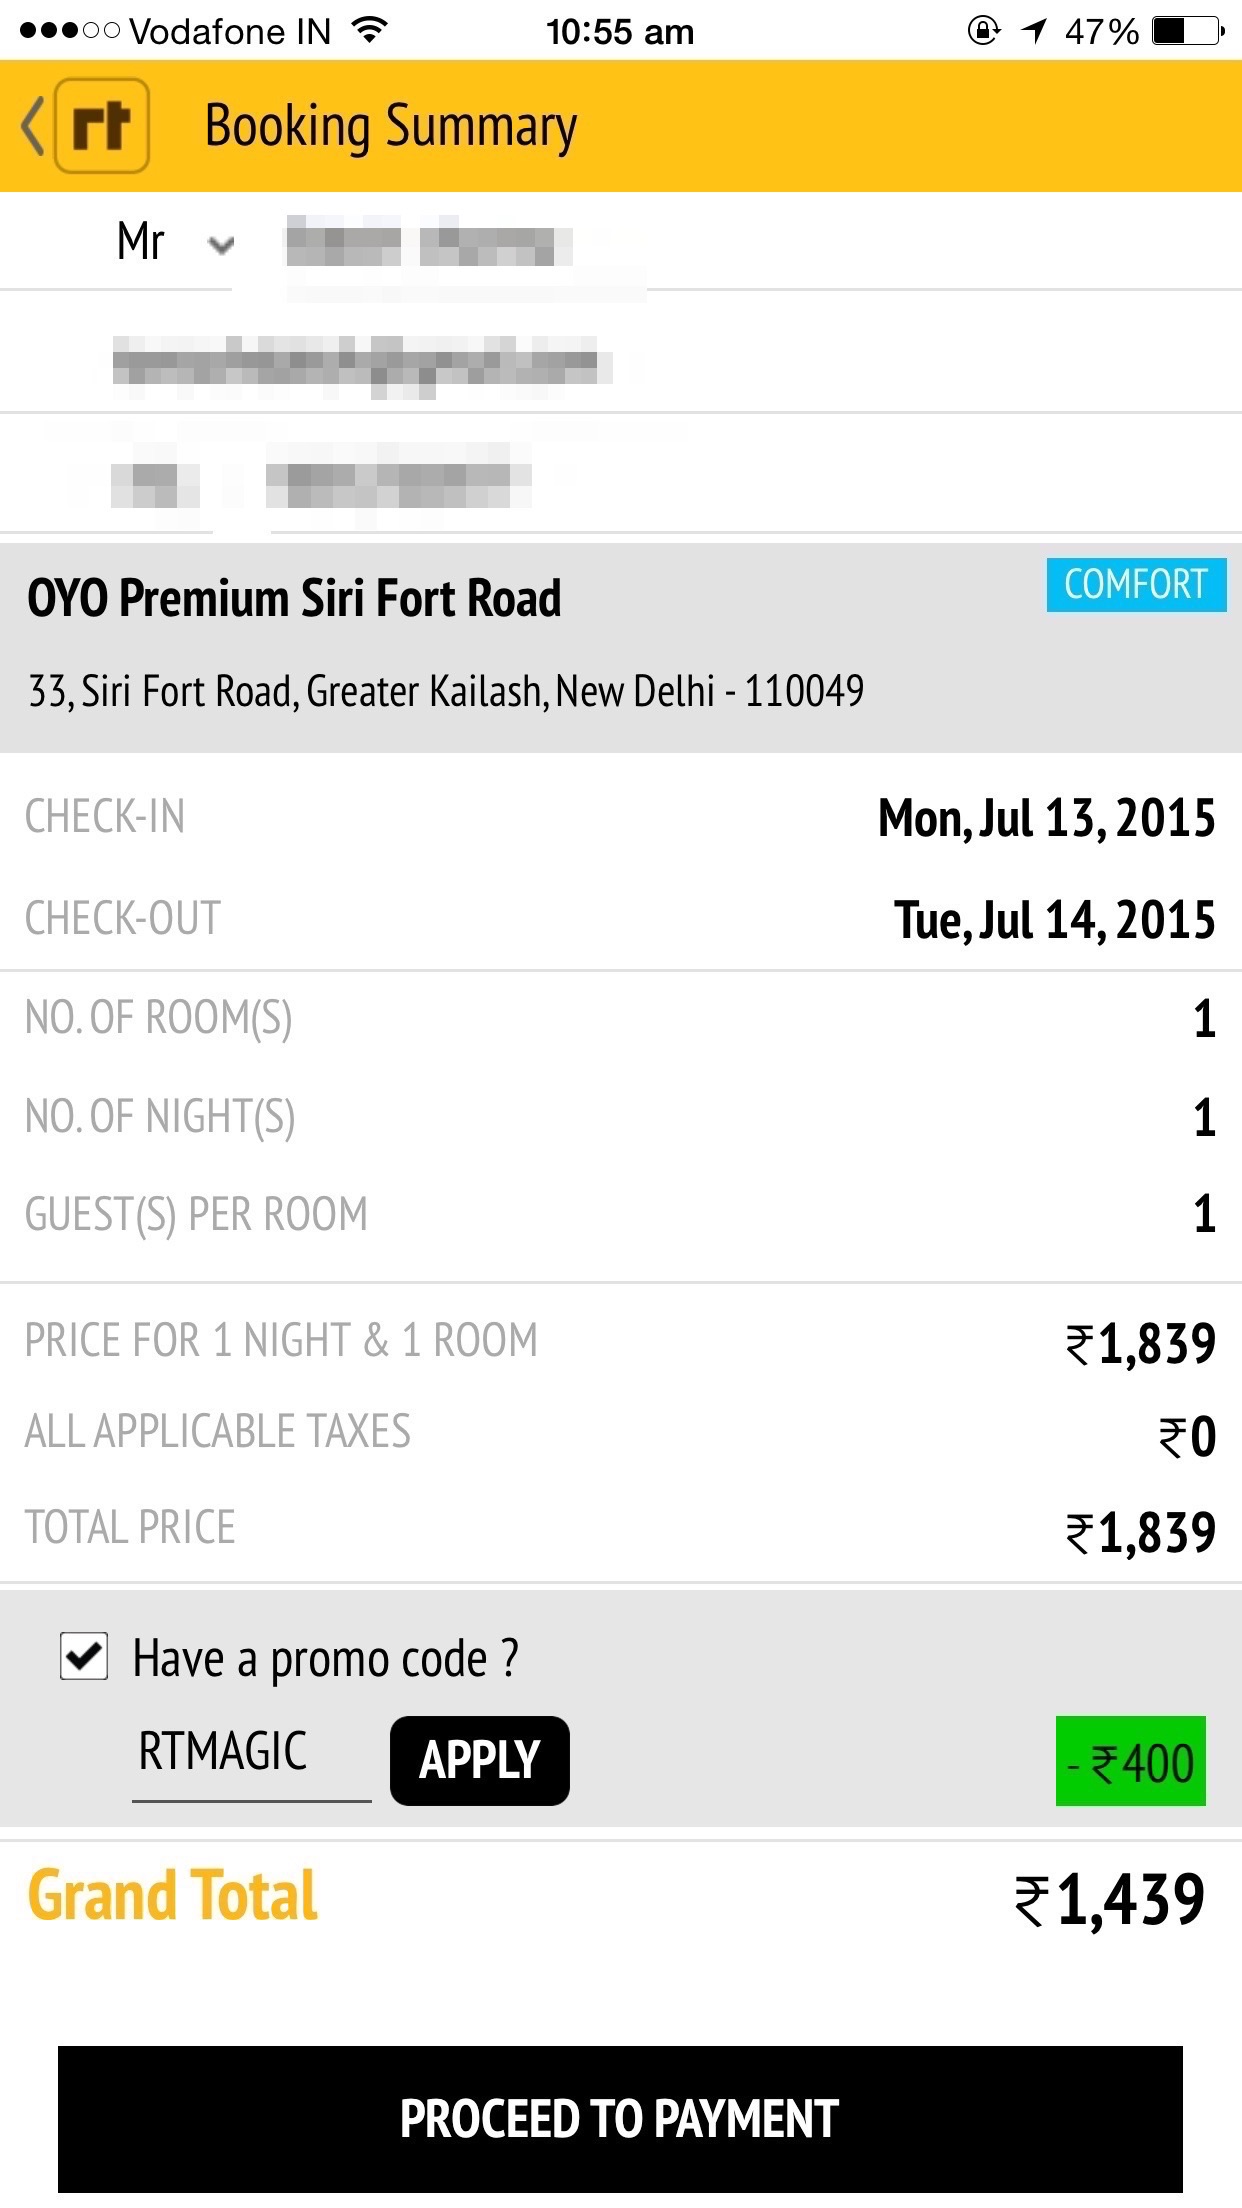 OYO Premium Siri Fort Road